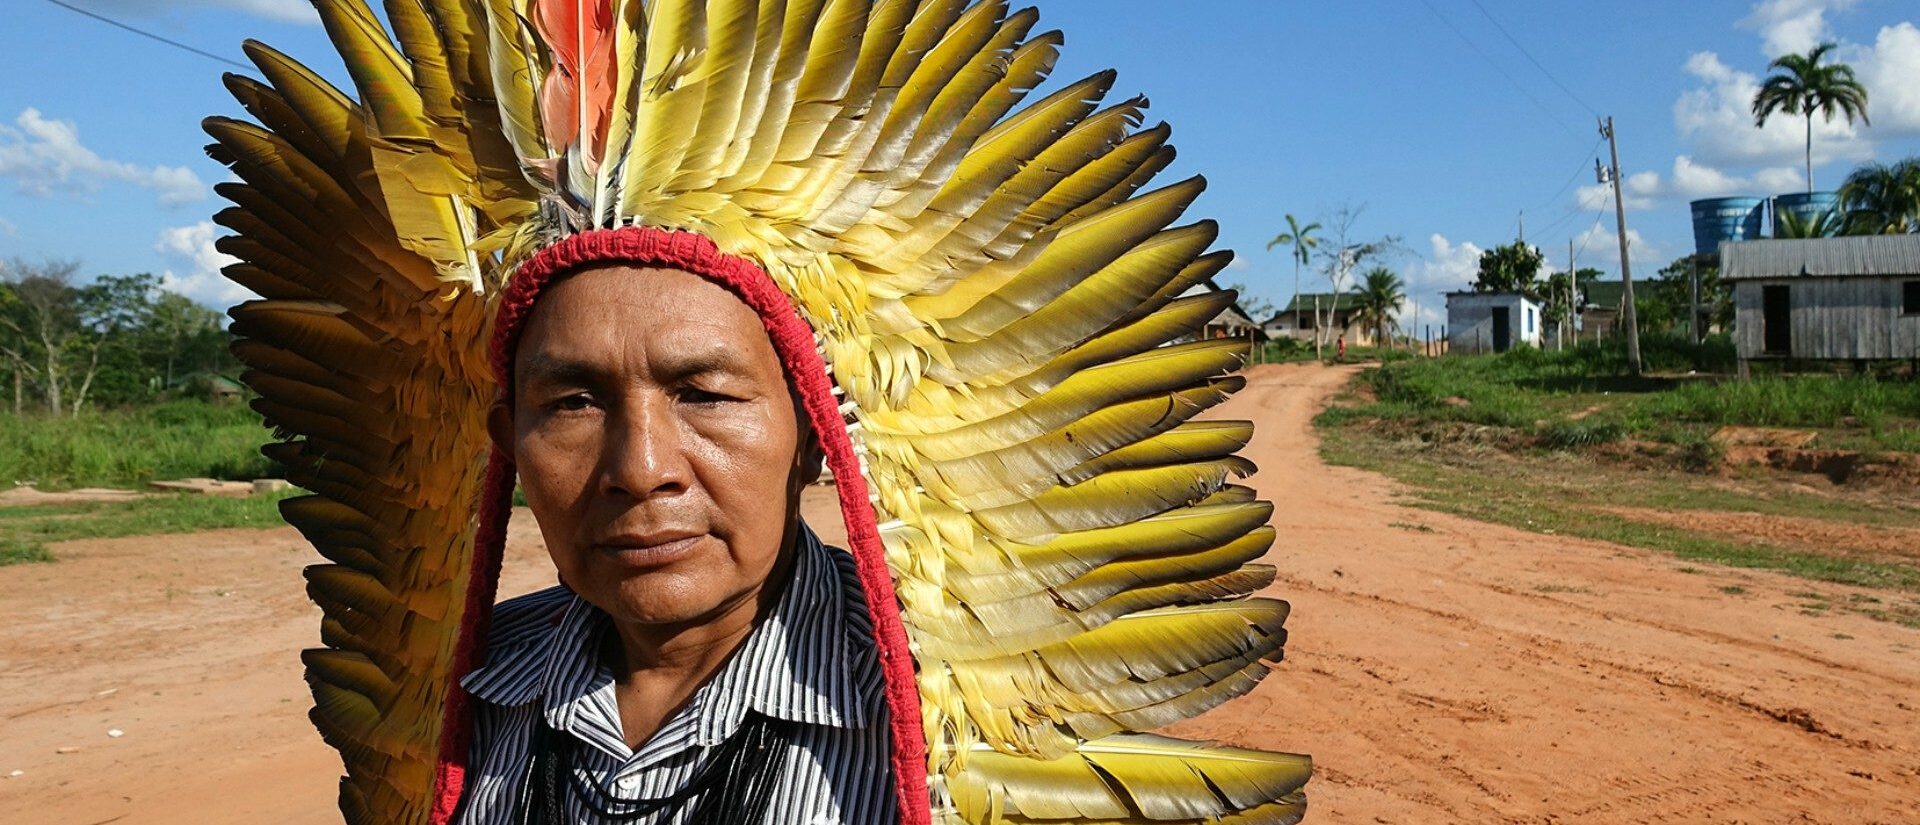 Les indigènes du Brésil sont particulièrement vulnérables face au coronavirus | © Jean-Claude Gerez